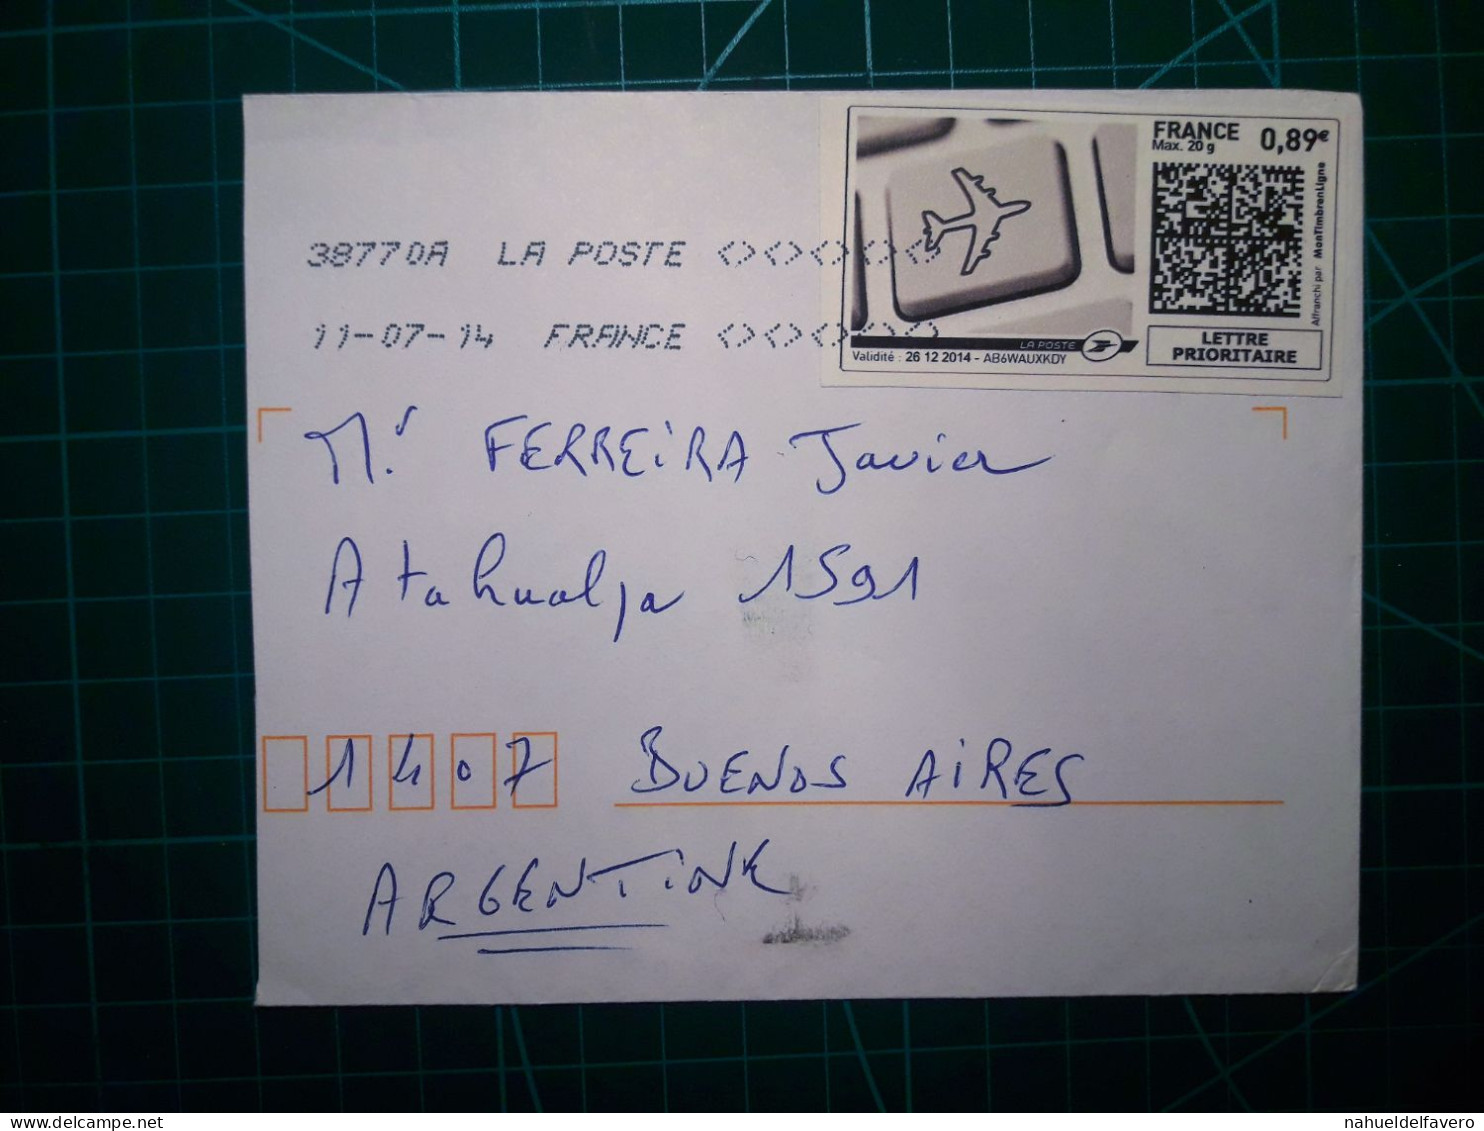 FRANCE, Enveloppe Envoyée à Buenos Aires, Argentine Avec Cachet Numérique Et Code QR. Année 2007. - Gebruikt